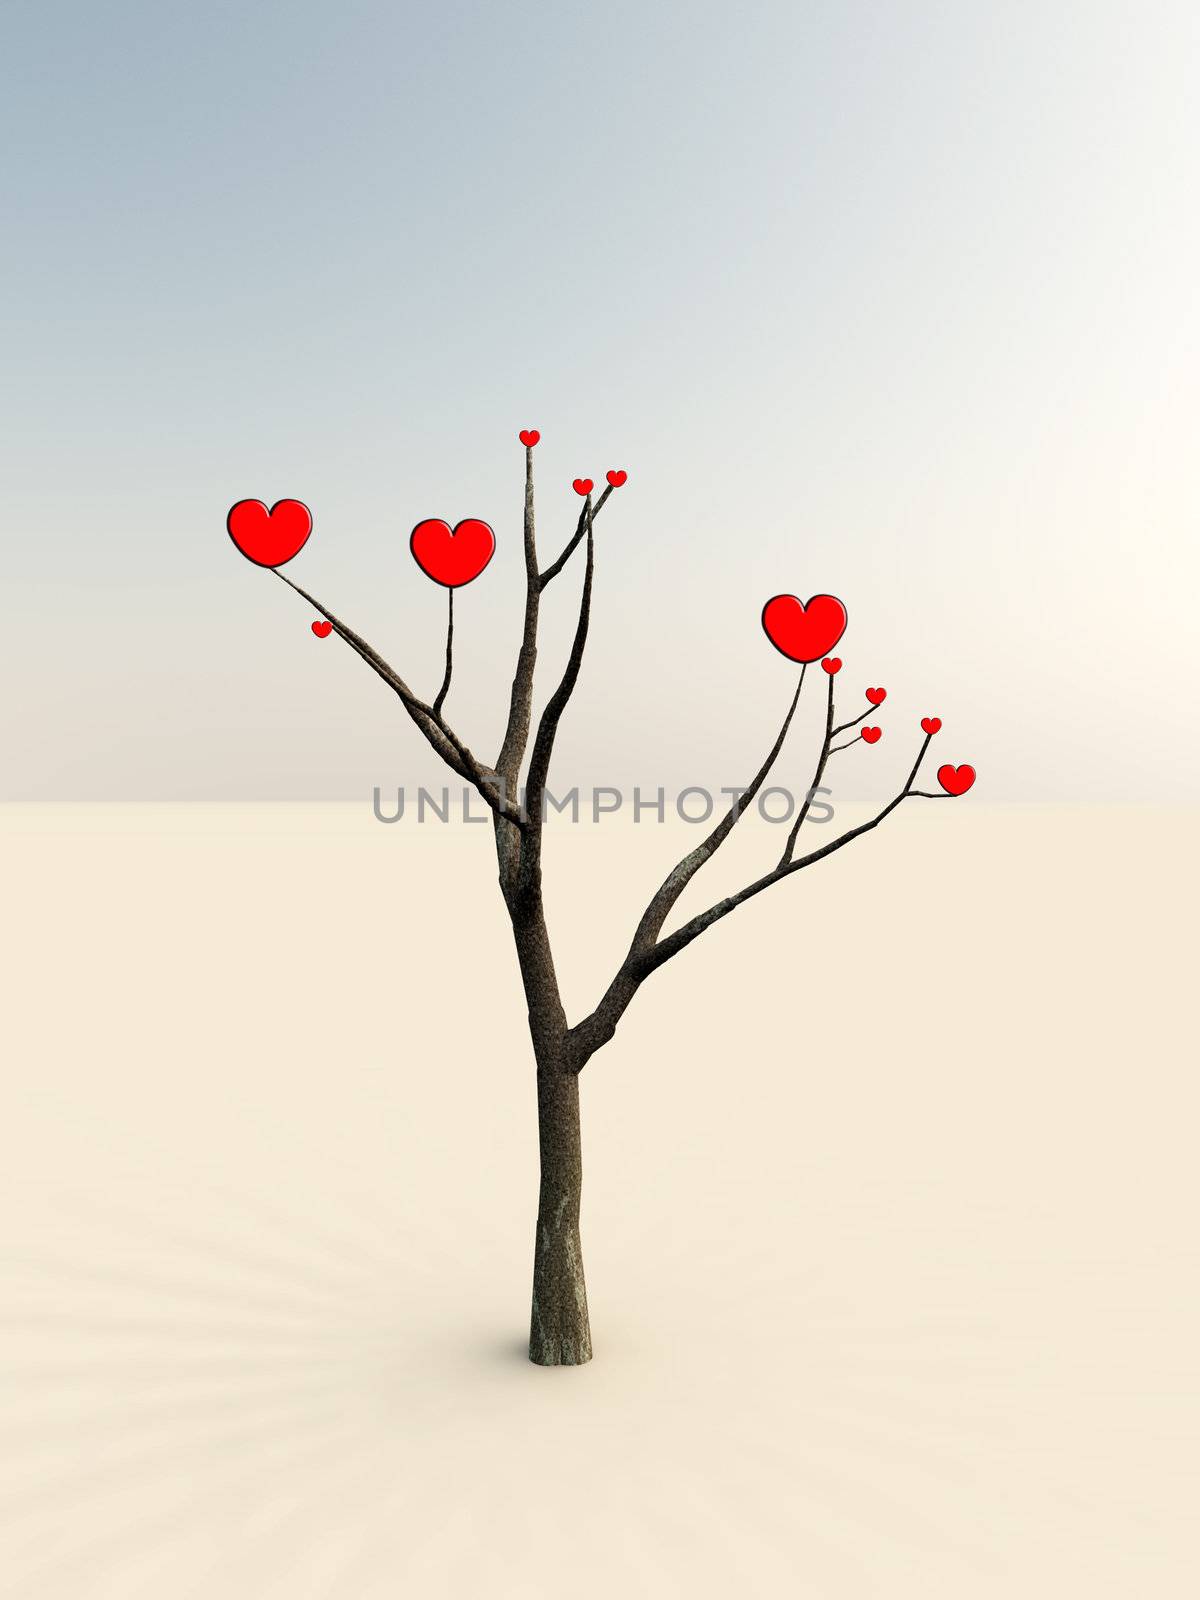 The Tree Of Love by harveysart